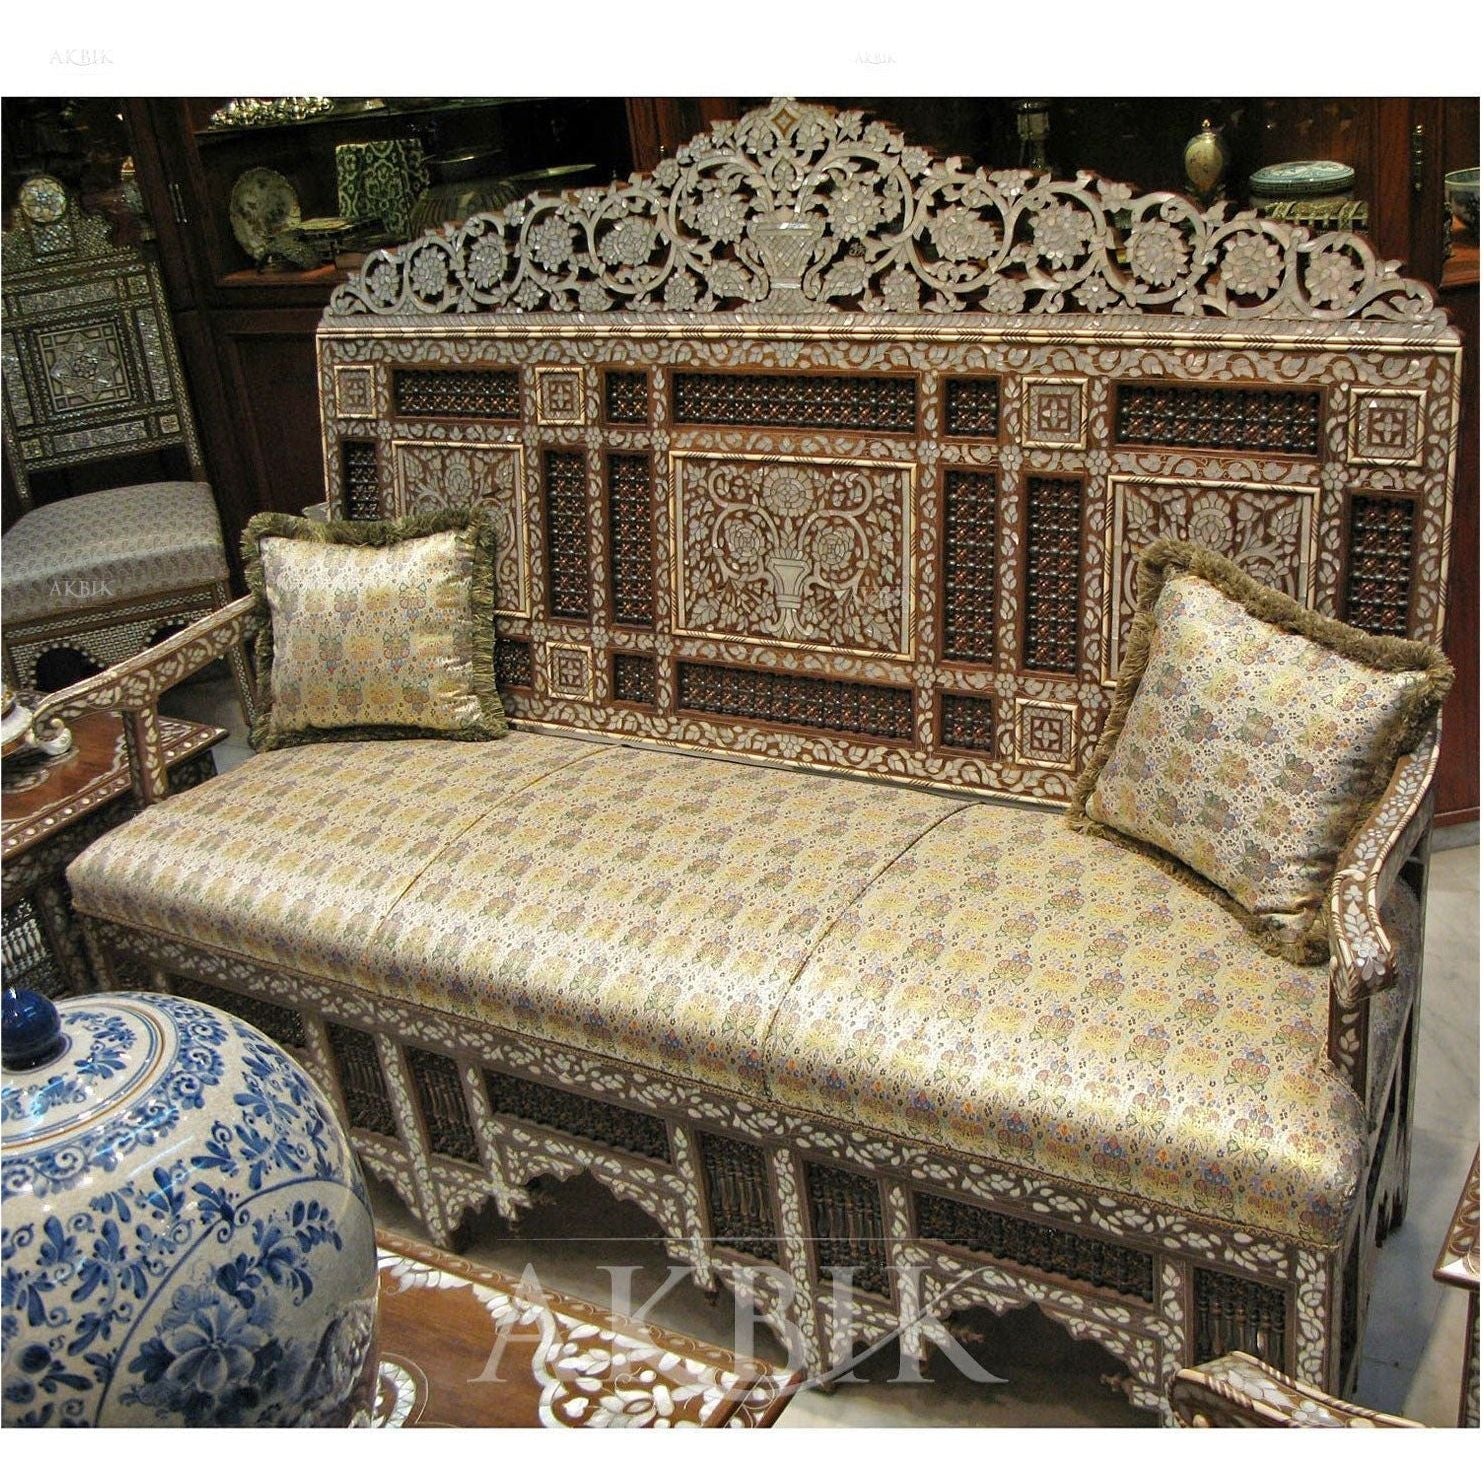 Cerulean Sofa - AKBIK Furniture & Design